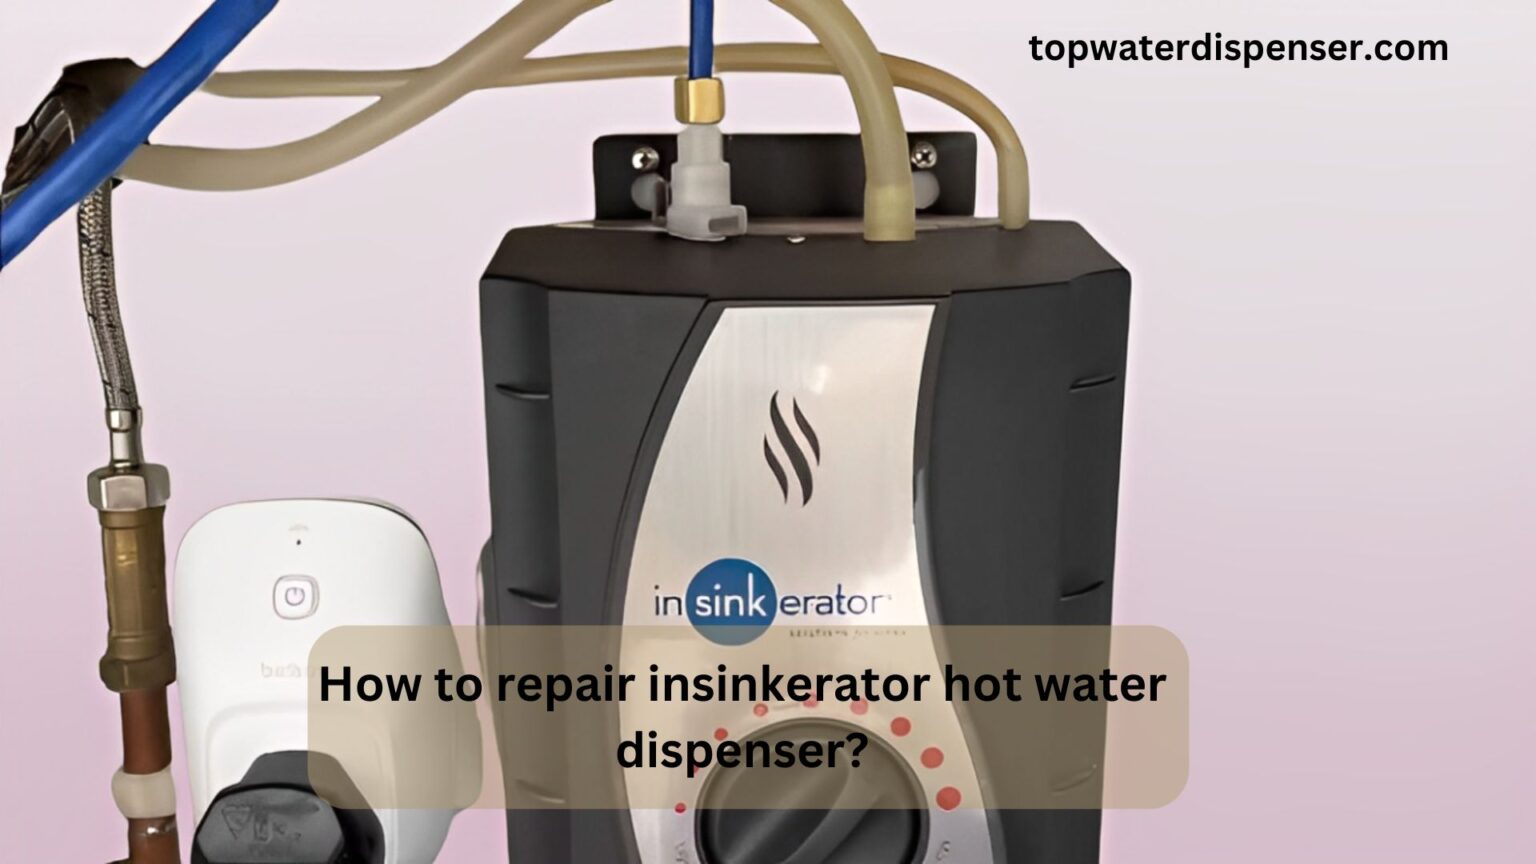 How to repair insinkerator hot water dispenser?